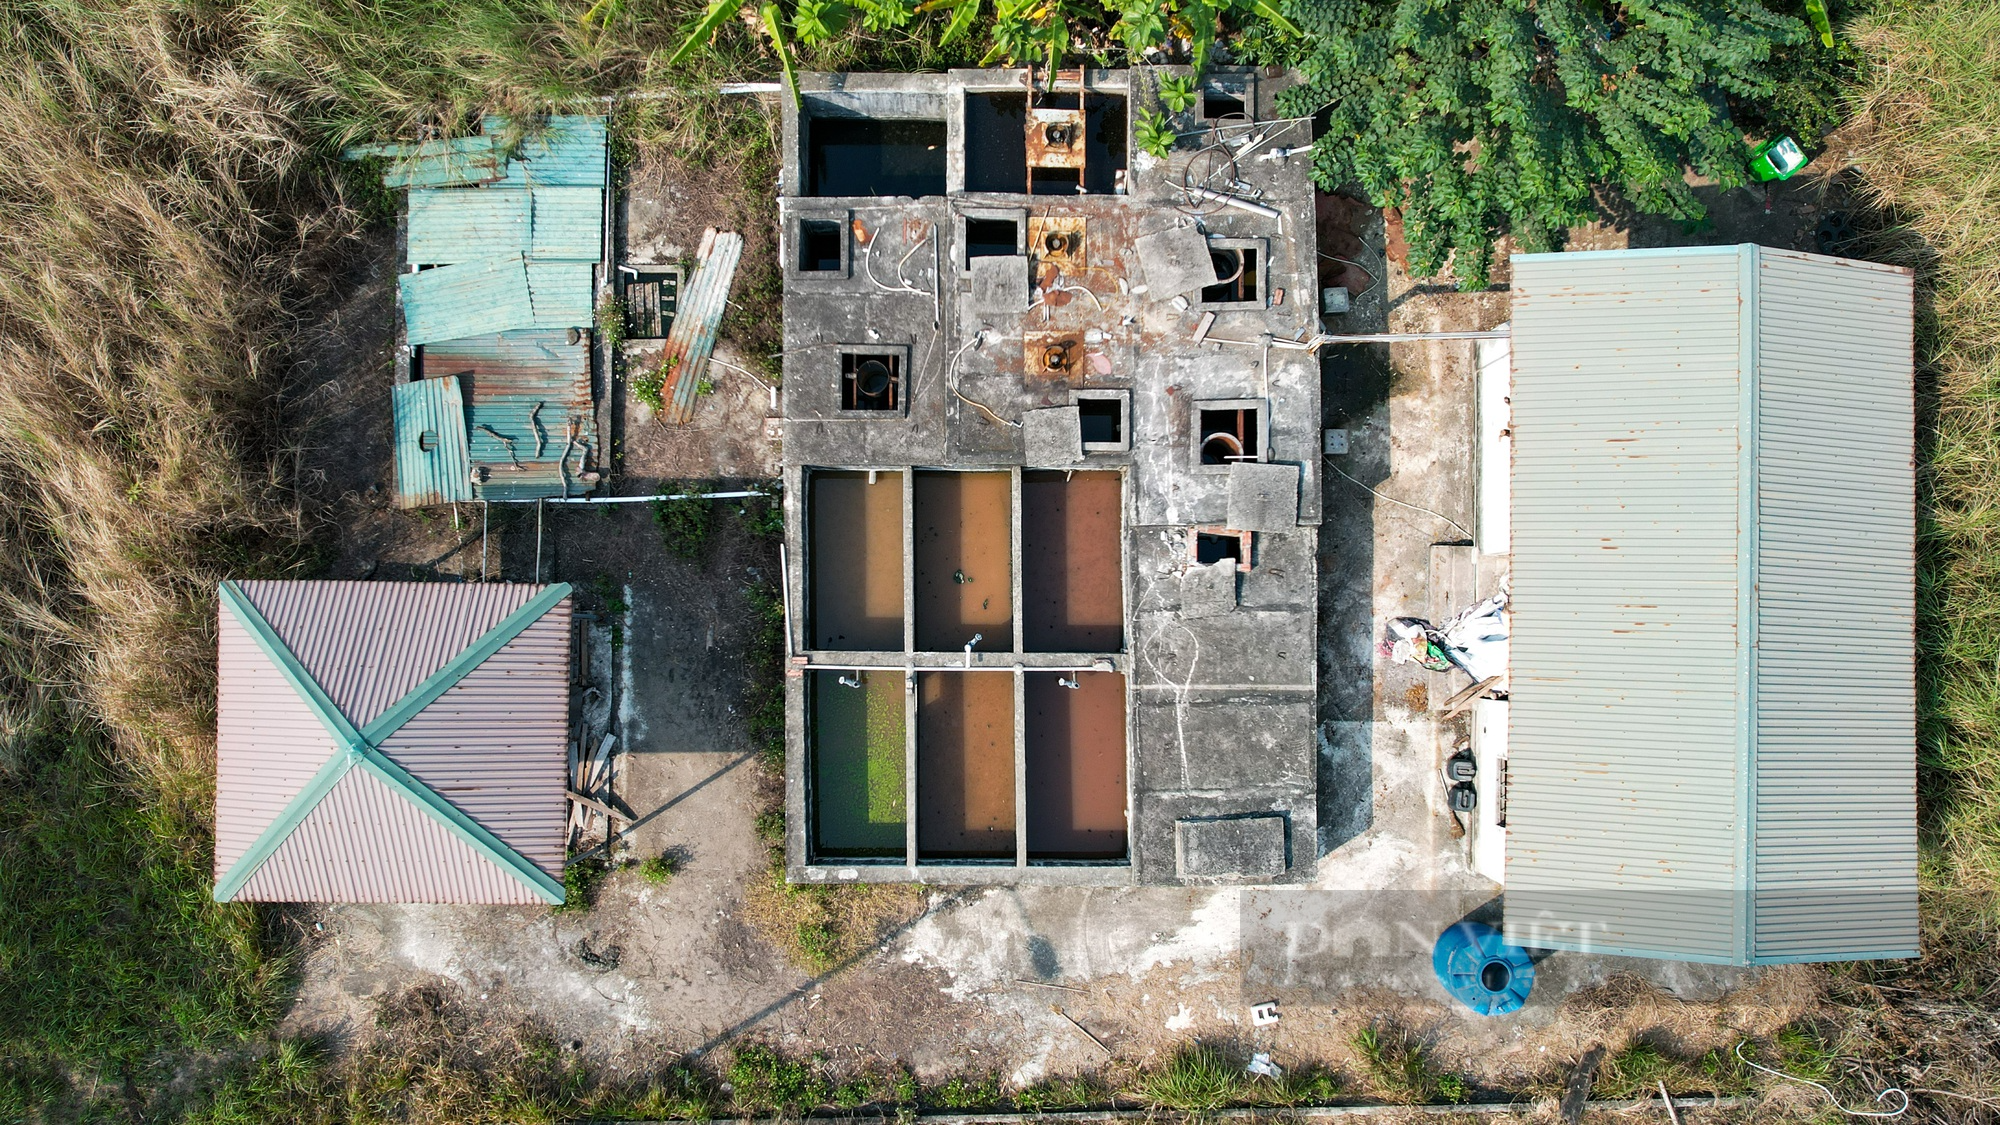 Toàn cảnh nhà máy rác trị giá hơn 200 tỉ bỏ hoang ở Hà Nội - Ảnh 3.